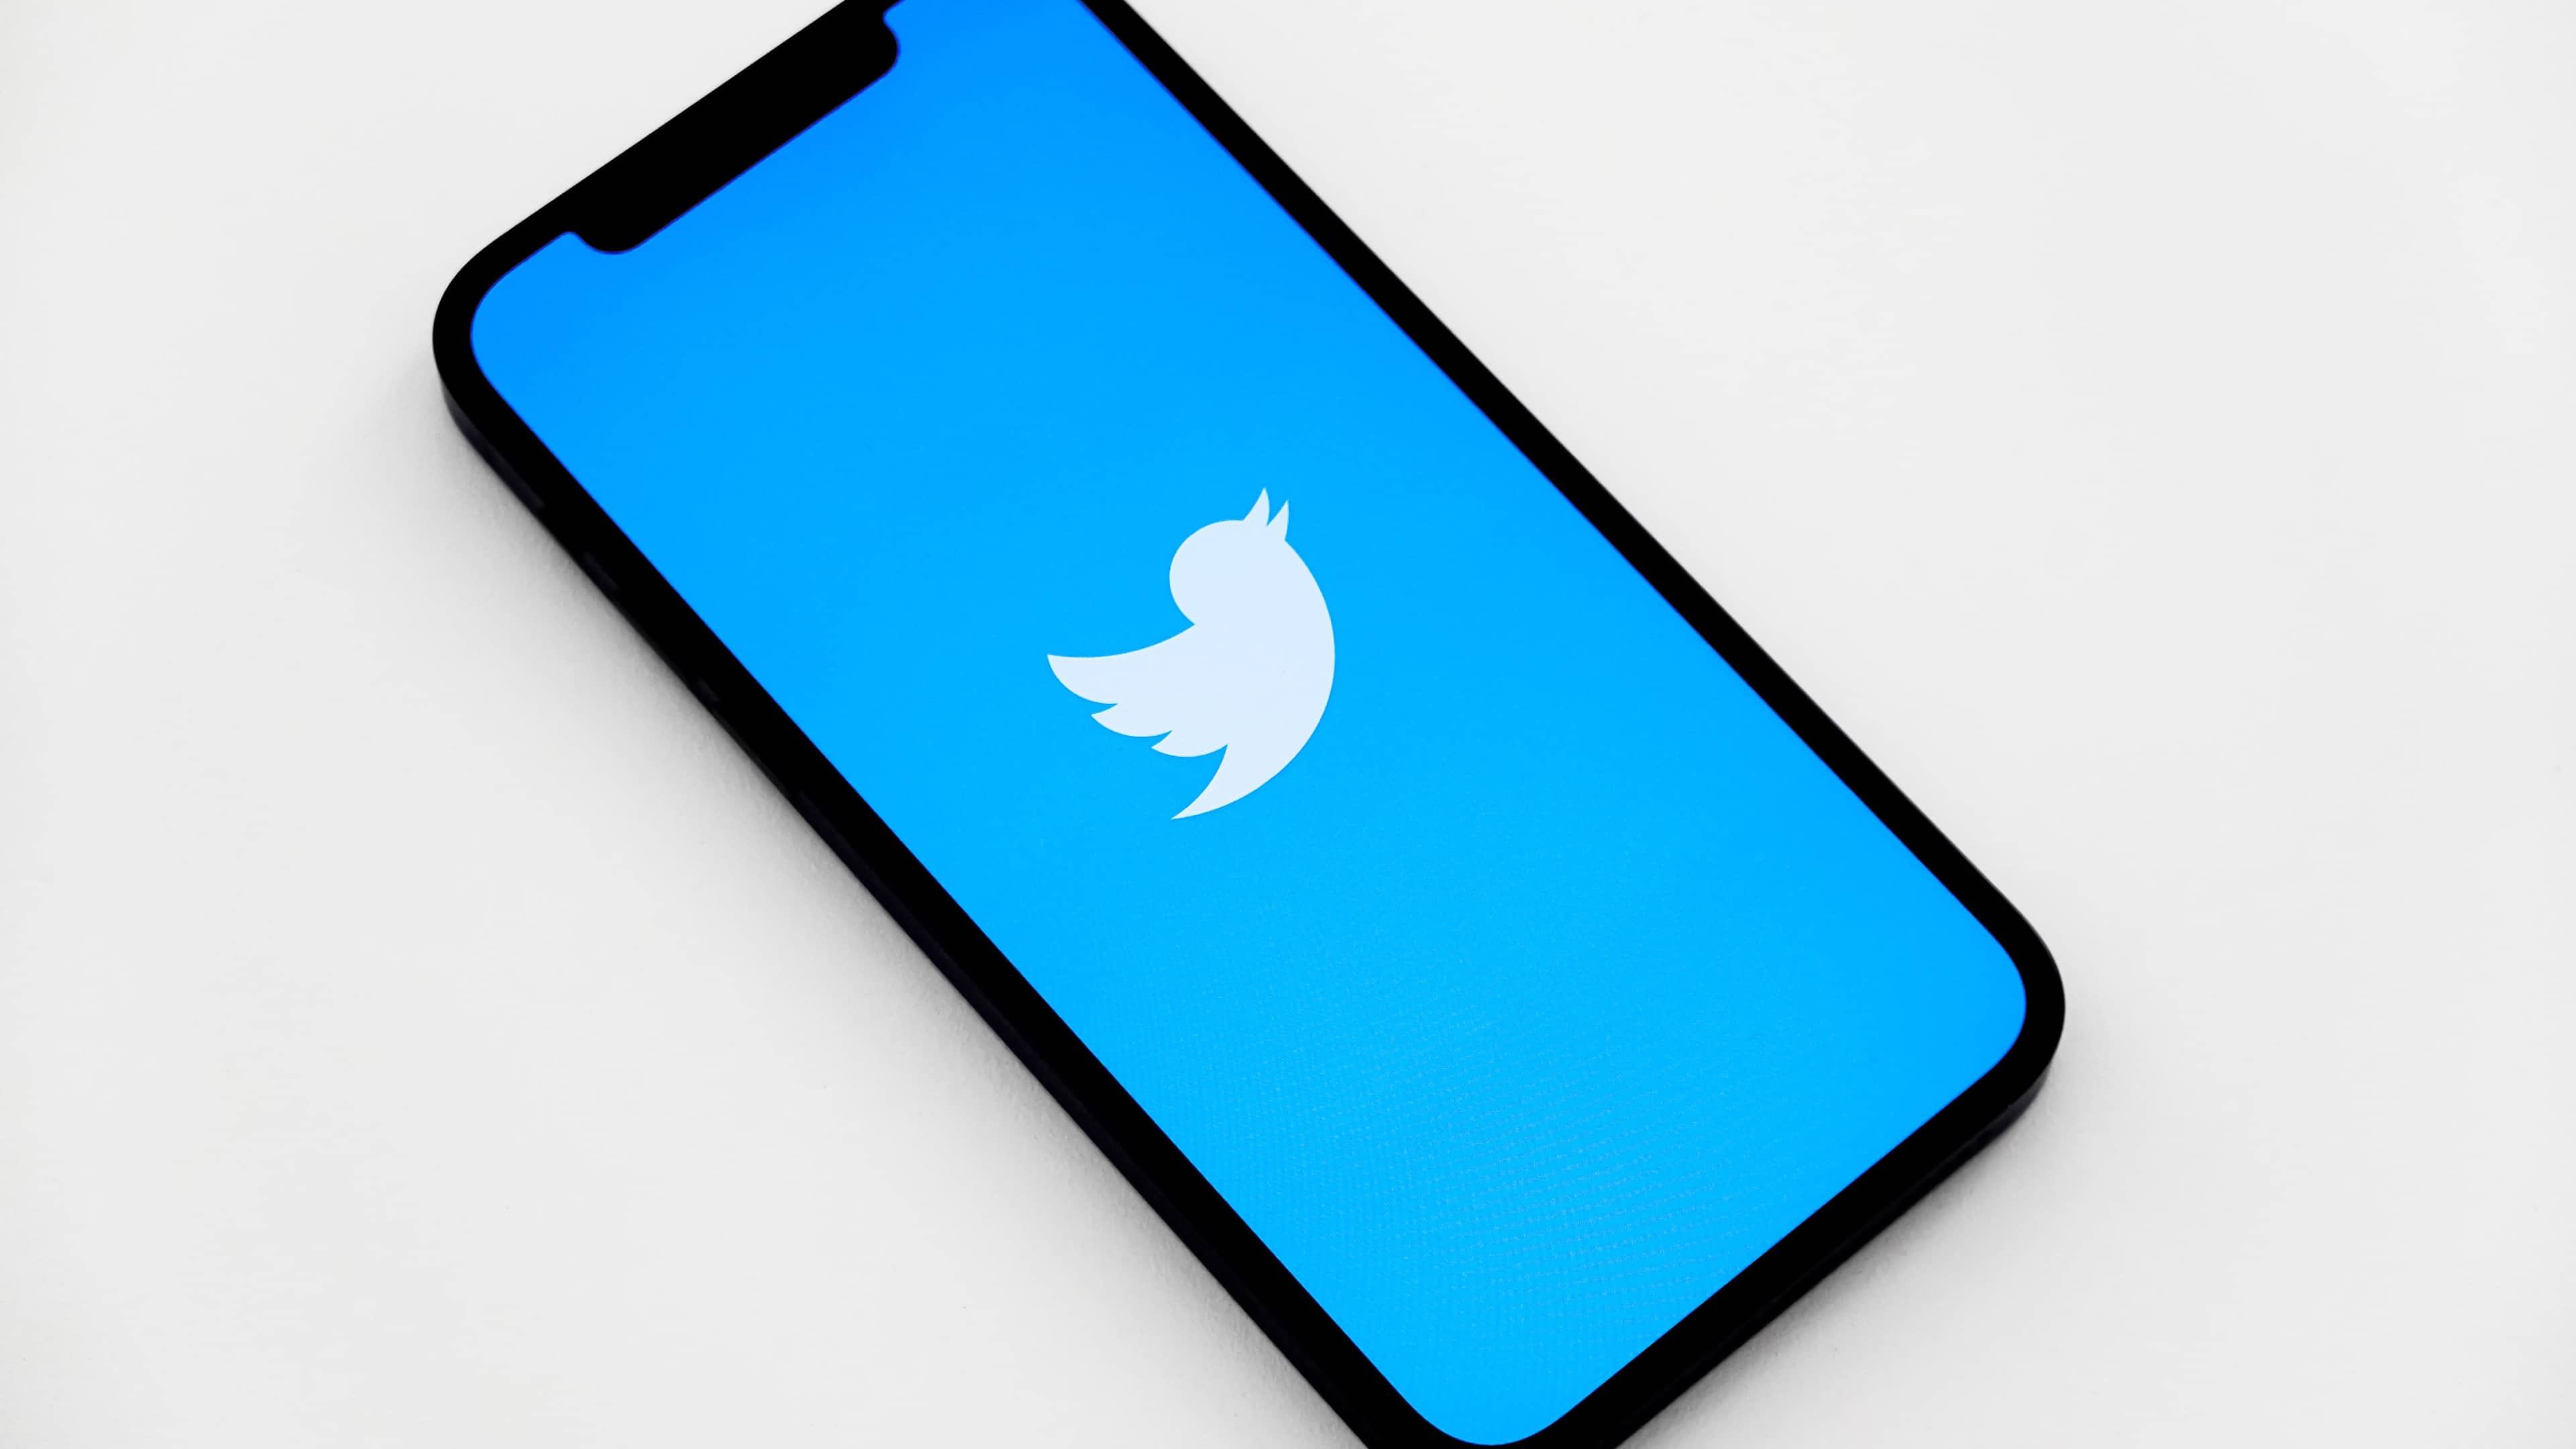 Isometrische Ansicht eines iPhones mit einem weißen Twitter-Vogellogo auf dem Bildschirm vor einem hellblauen Hintergrund